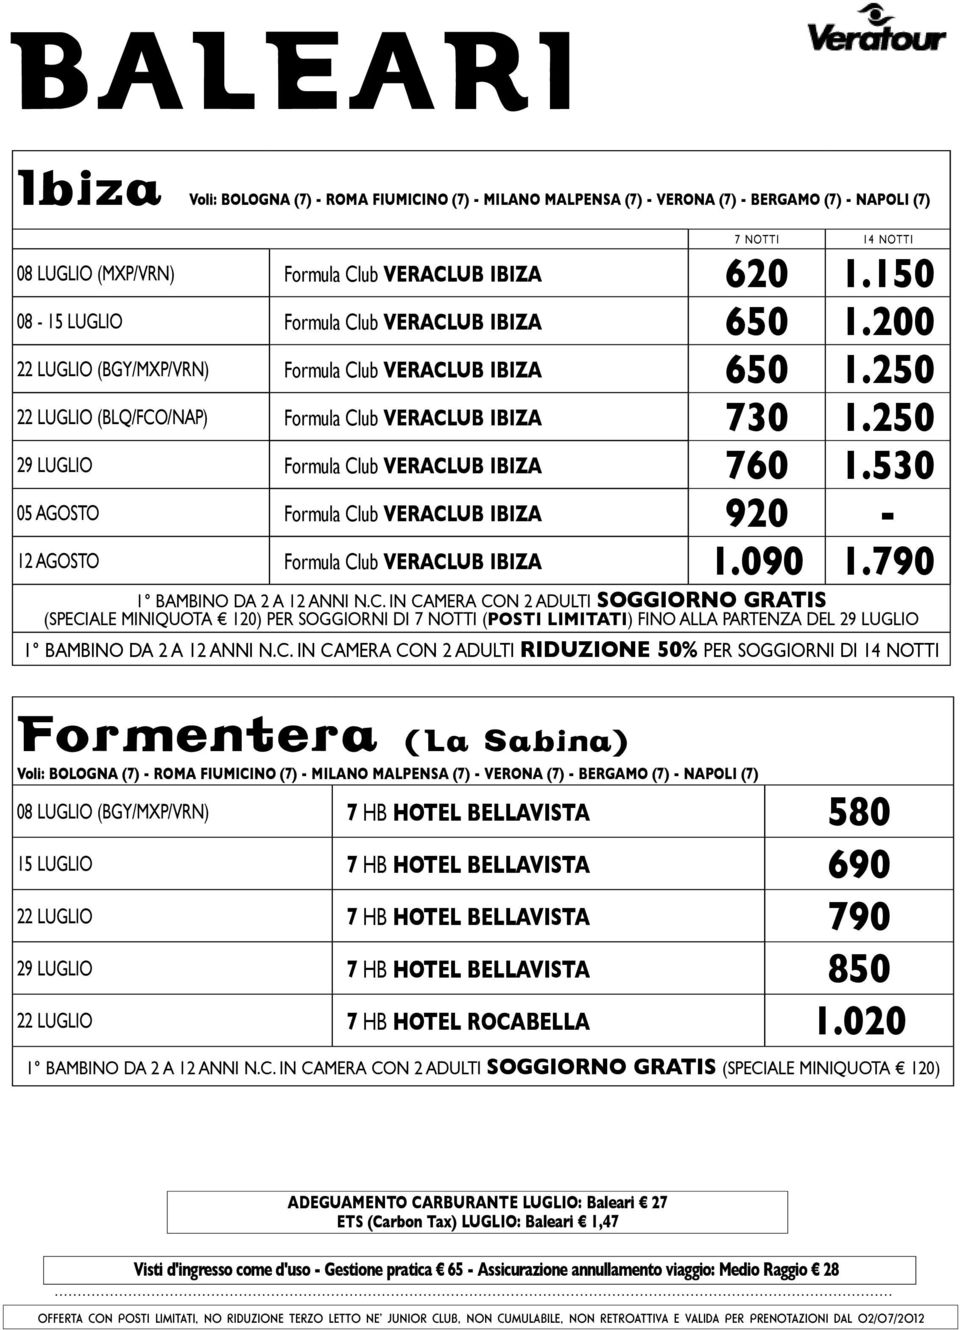 250 29 LUGLIO Formula Club veraclub IBIZA 760 1.530 05 agosto Formula Club veraclub IBIZA 920-12 agosto Formula Club veraclub IBIZA 1.090 1.